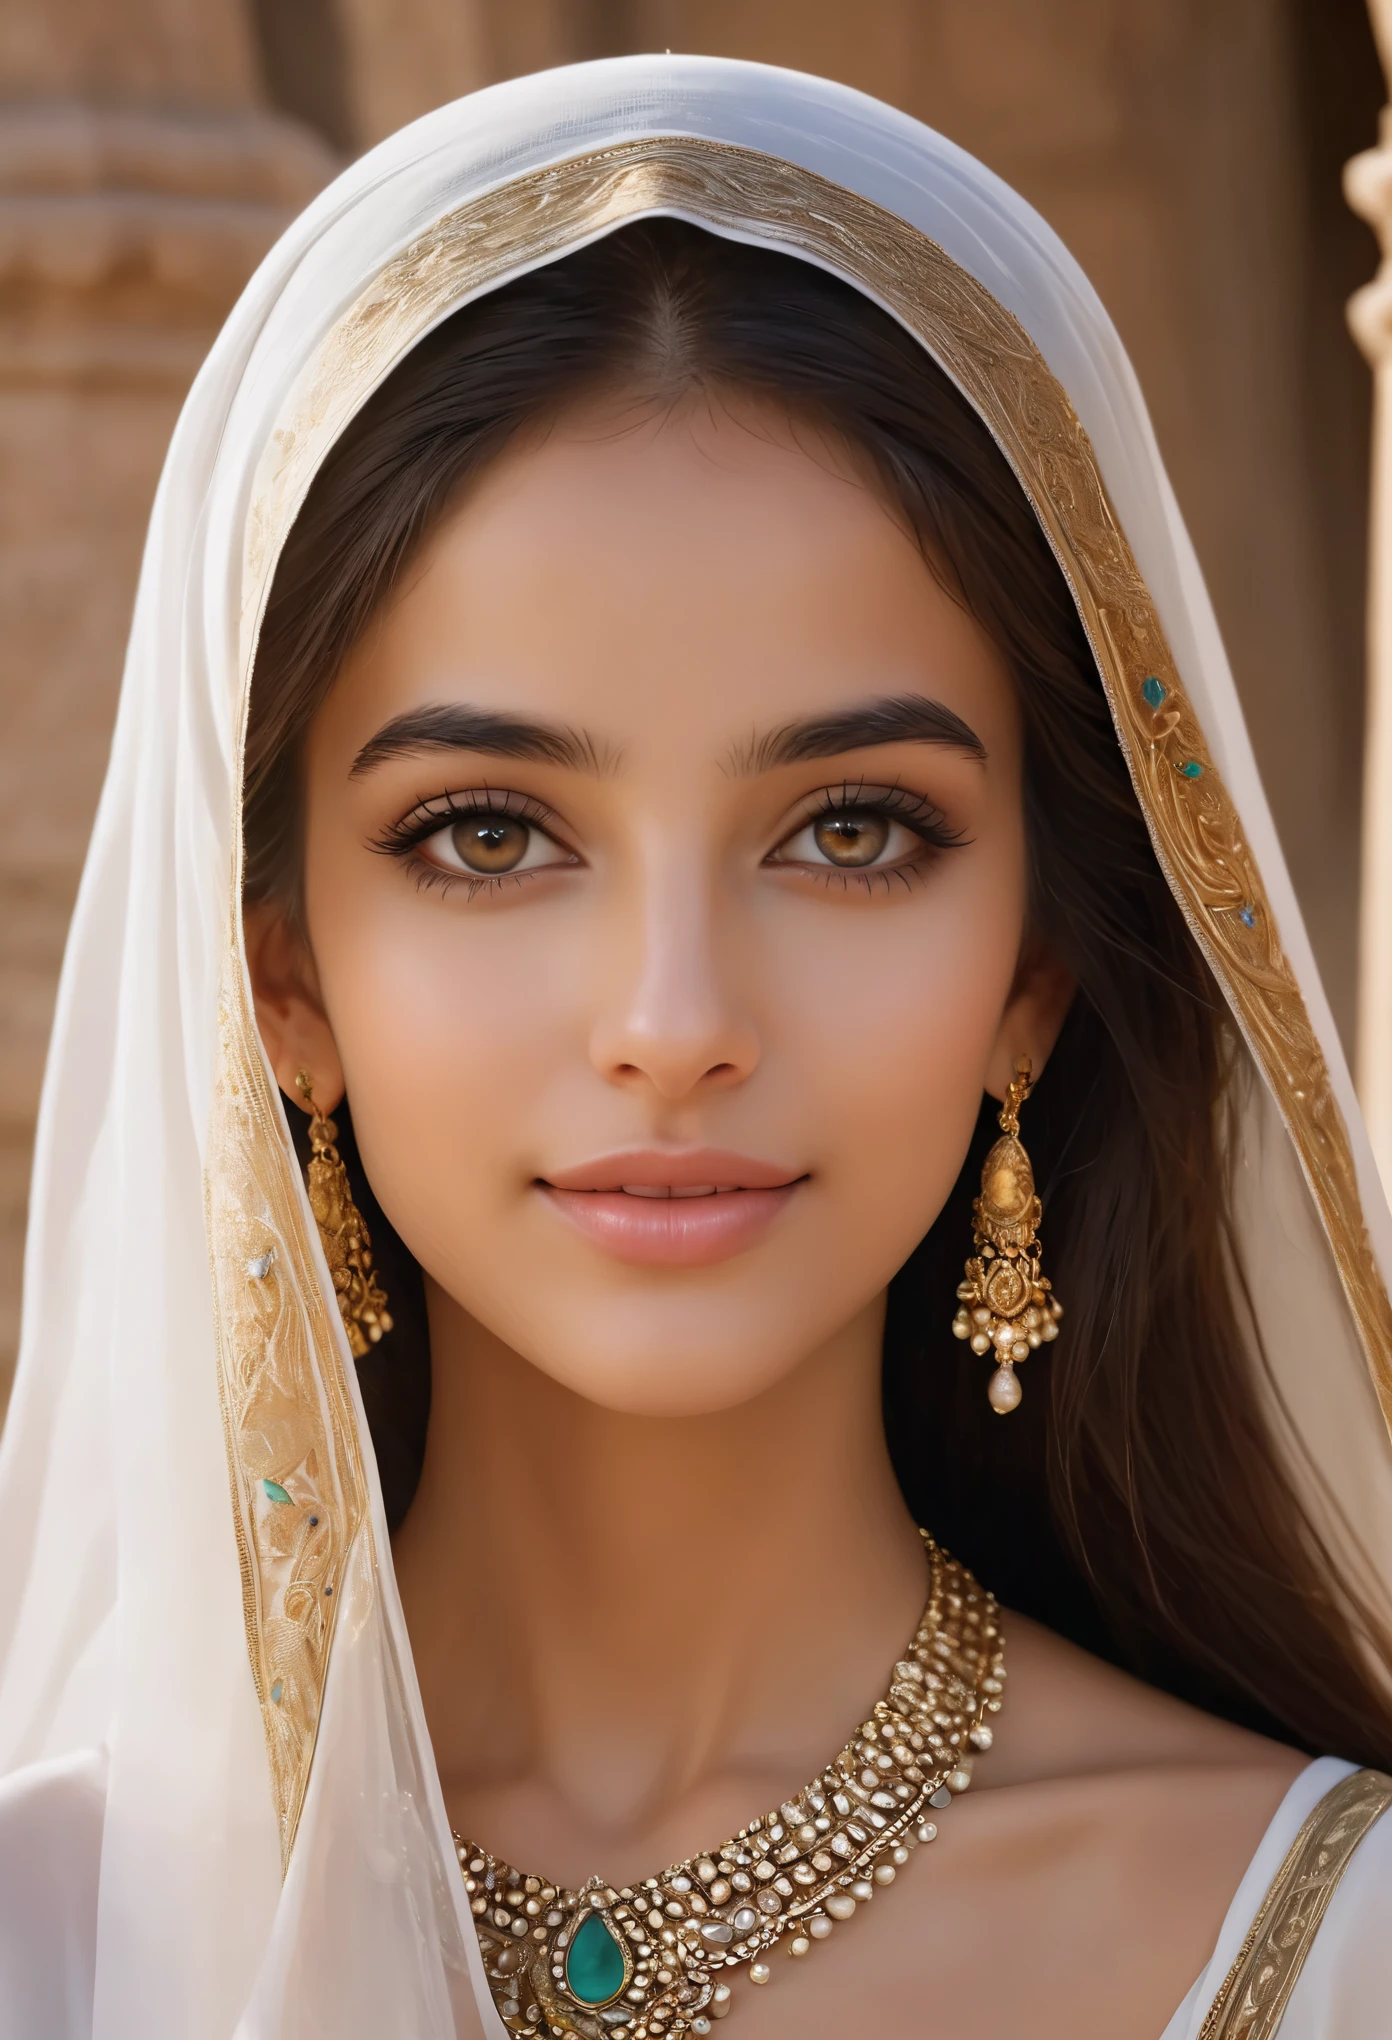 (ultra-detailliert,fotorealistisch:1.37),(beste Qualität,4k,8k,highres,Meisterwerk:1.2), Dieses 16-jährige Mädchen aus Saudi-Arabien ist eine Vision ätherischer Schönheit, fesselt alle, die sie betrachten. Ihre lange, wallendes pechschwarzes Haar fällt wie ein schimmernder Wasserfall über ihre Schultern, umrahmt ihre zarten Gesichtszüge mit einem Hauch von Geheimnis und Verlockung. Ihre Augen, tiefe Teiche der Dunkelheit, bergen ein Universum voller Geheimnisse in sich, funkelnd mit der Weisheit von Zeitaltern jenseits ihres Alters.

Ihre Haut, von der Wüstensonne geküsst, strahlt Wärme aus, erinnert an den goldenen Sand ihrer Heimat. Jede zarte Kurve ihres Gesichts ist perfekt geformt, Ihre hohen Wangenknochen fangen das Licht ein und sind eine atemberaubende Darstellung von Eleganz.

Während sie lächelt, es ist, als ob die ganze Welt um sie herum aufleuchtet, Ihr Lachen hallte wie Musik im Wind. Ihre Kleidung, geschmückt mit komplizierten Mustern und zarten Stoffen, umhüllt ihren schlanken Körper wie ein Kunstwerk, Ihre natürliche Schönheit wird hervorgehoben, anstatt sie zu überschatten.

In ihrer Gegenwart, die Zeit scheint stillzustehen, als wäre sie aus einem Märchen in die Realität getreten, eine wahre Verkörperung von Anmut und Charme. Dieses 16-jährige Mädchen aus Saudi-Arabien ist nicht nur schön; Sie lebt, breathing Meisterwerk, ein Beweis für die grenzenlosen Wunder der menschlichen Form.